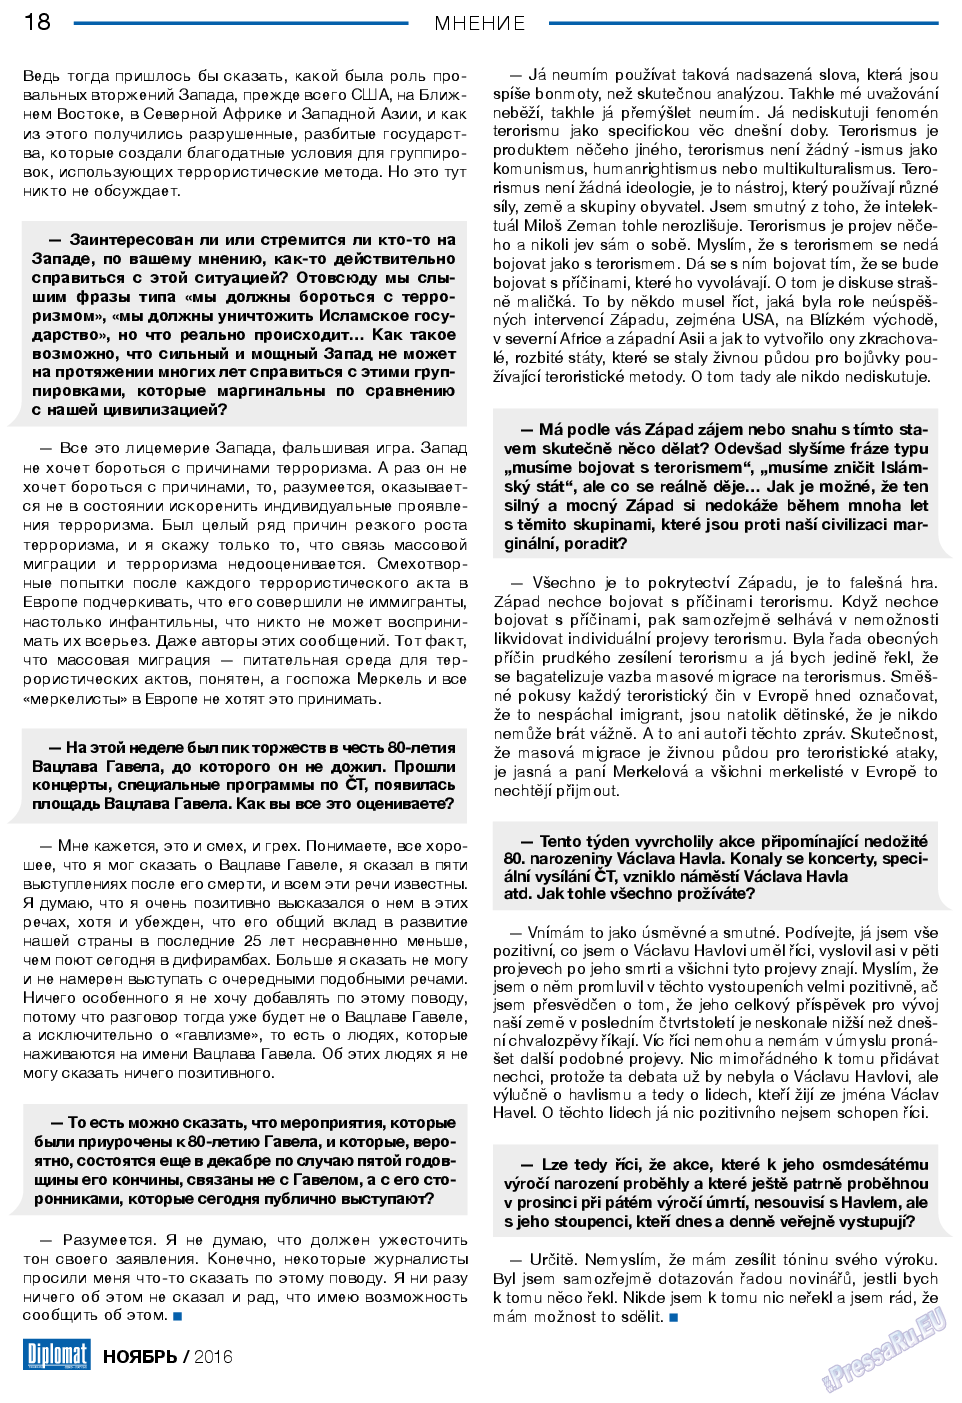 Diplomat, газета. 2016 №86 стр.18